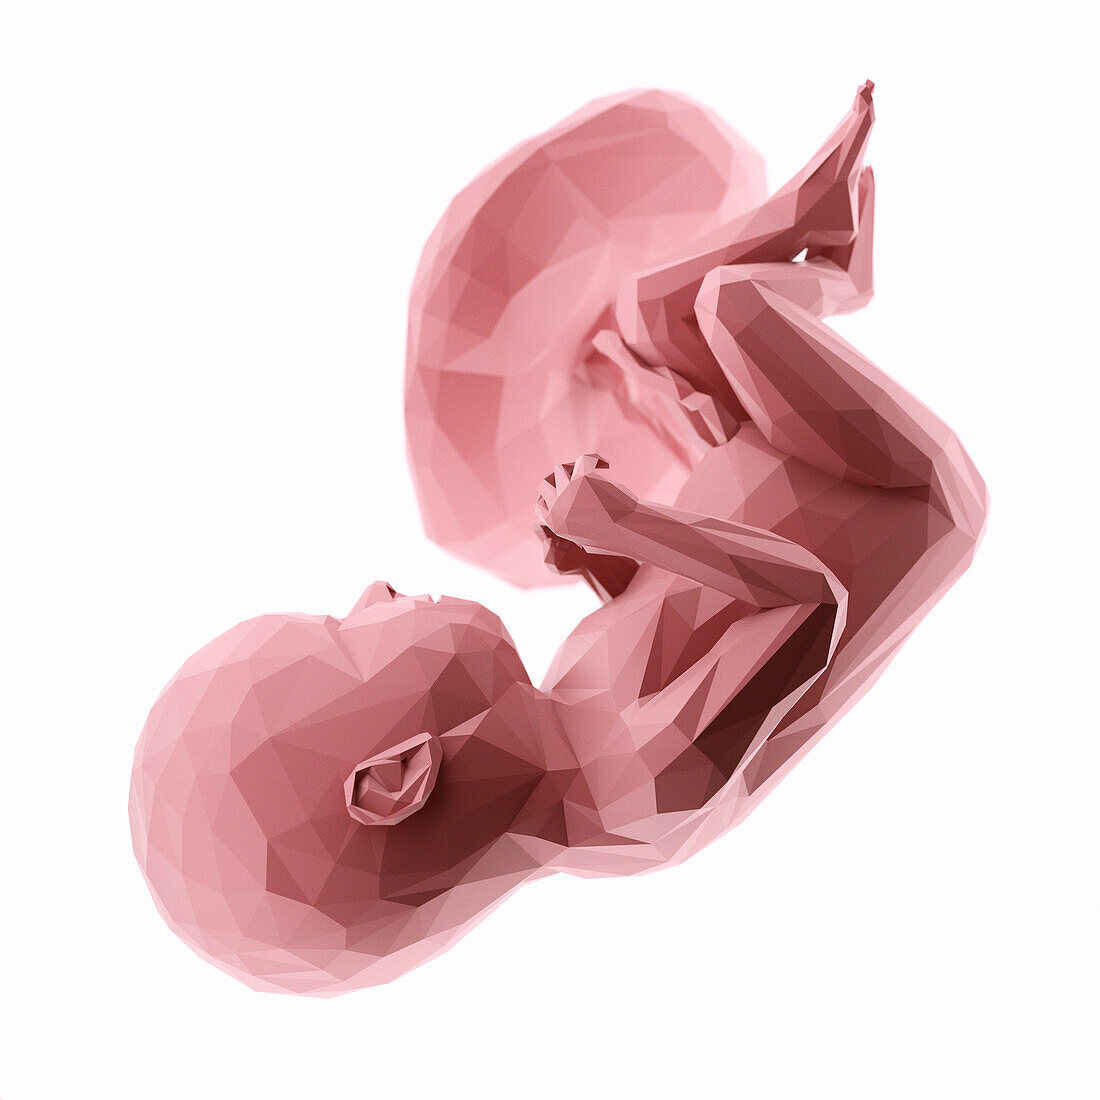 Human fetus at week 37, abstract illustration